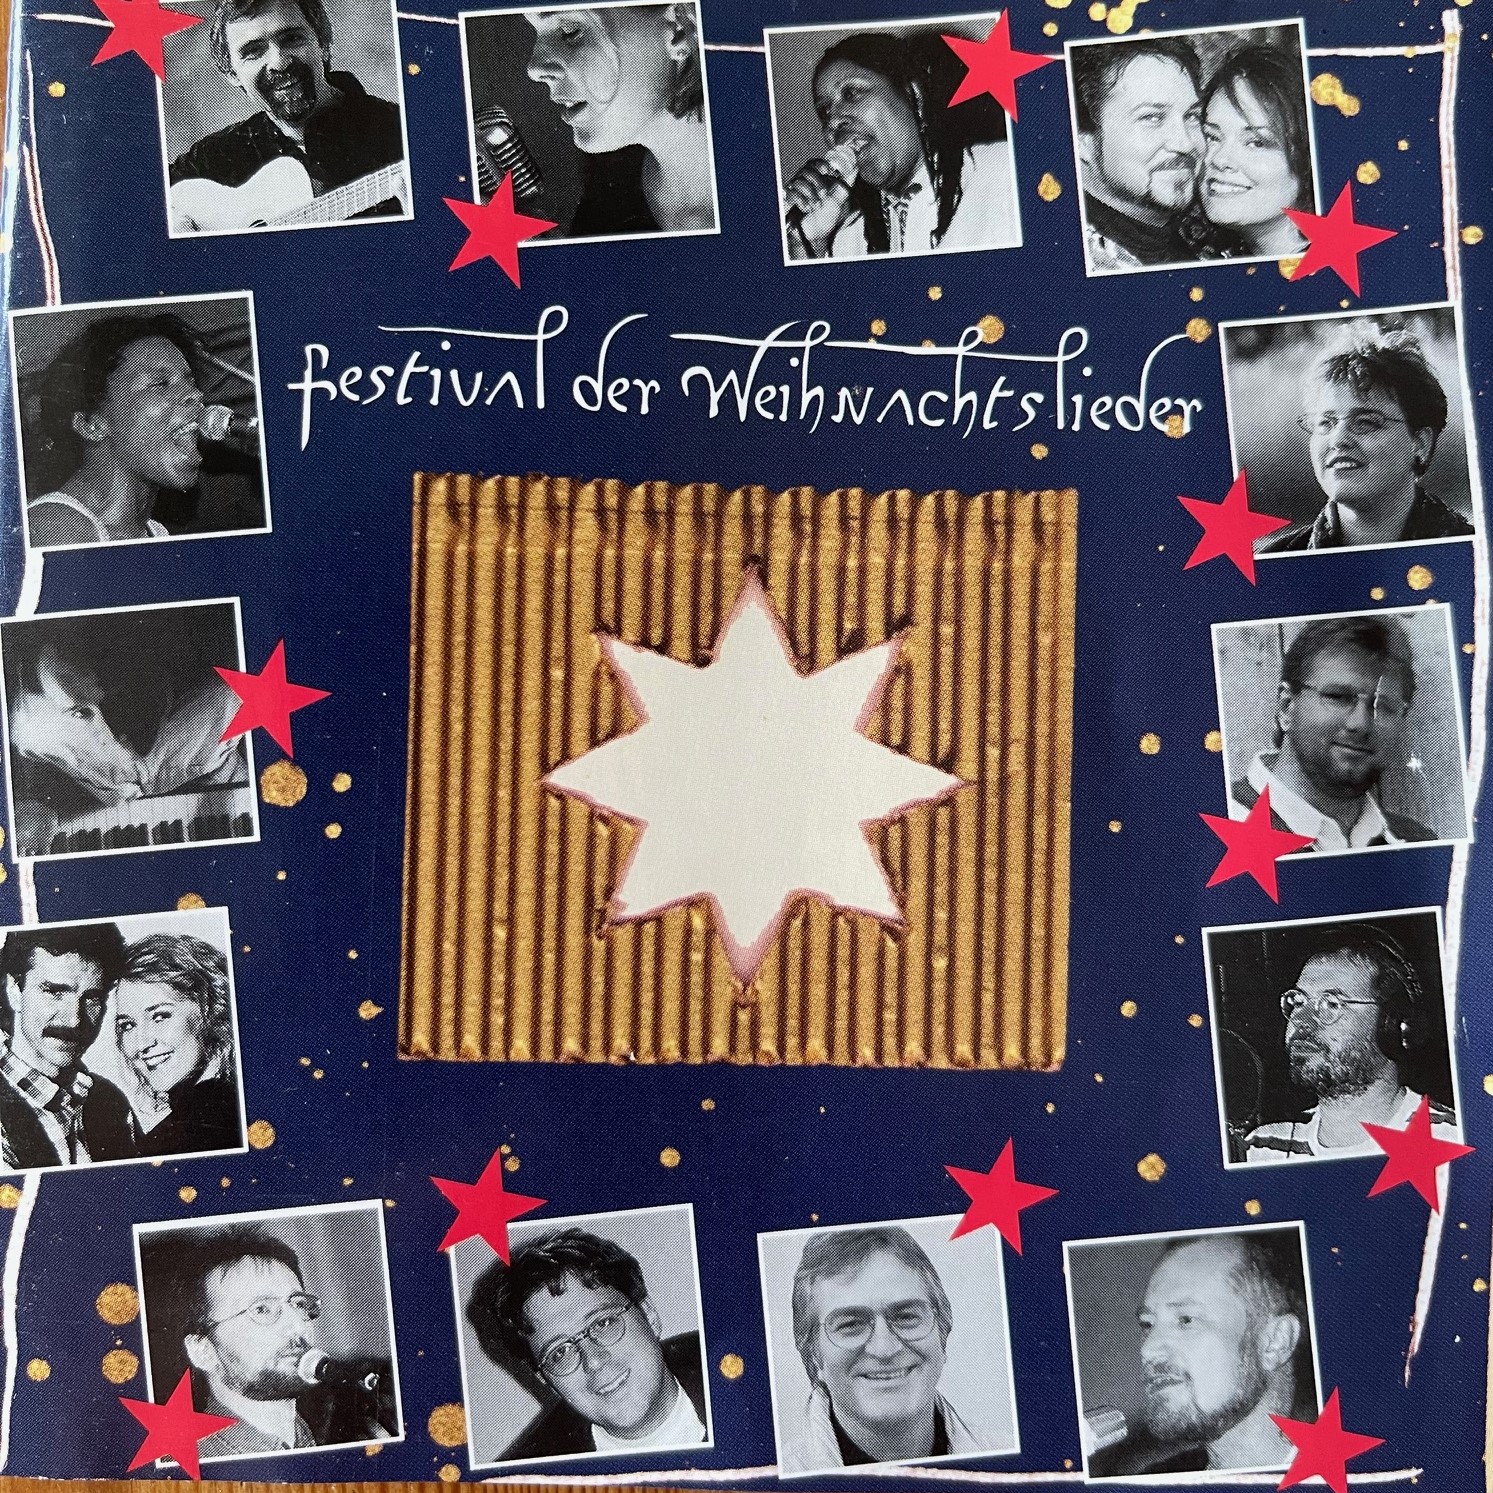 1998 Festival der Weihnachtslieder